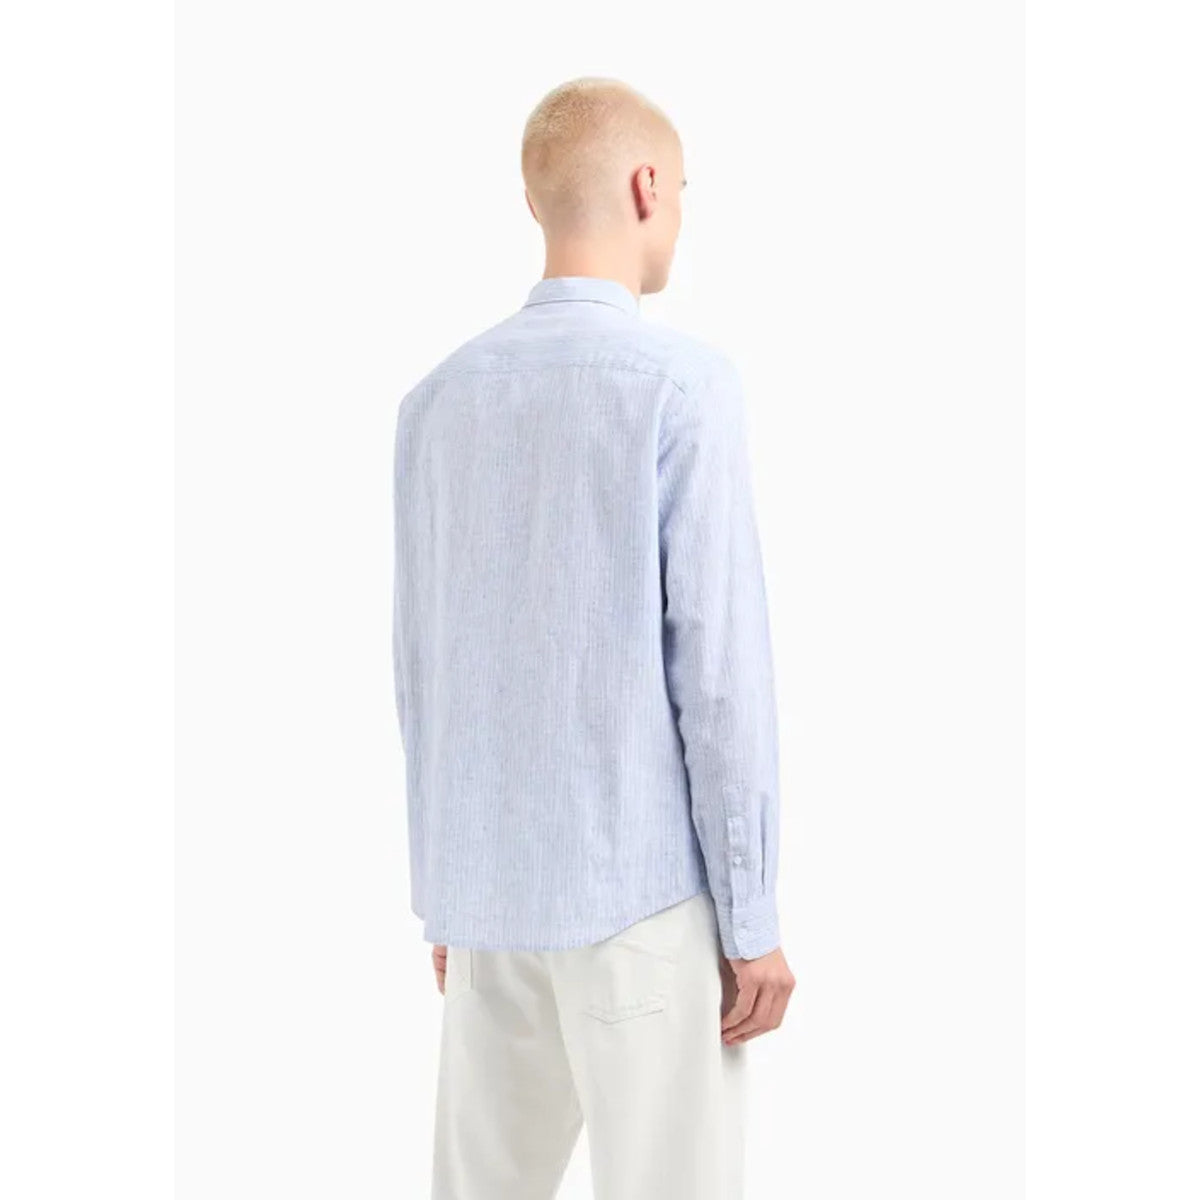 Armani Exchange Linen Striped Shirt 61AH White/Blue